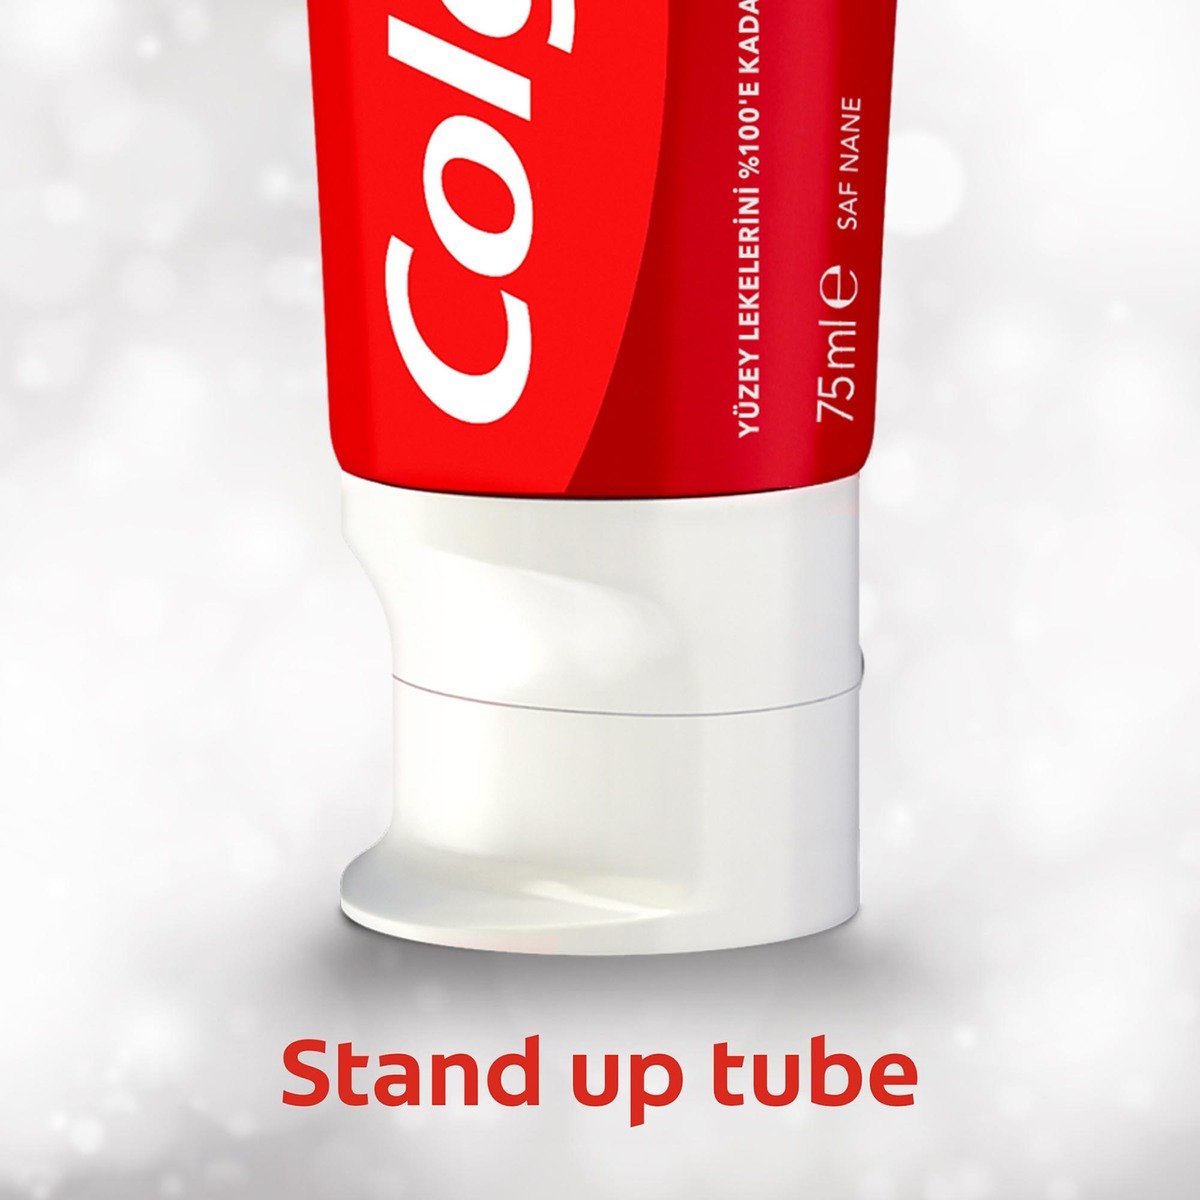 Colgate Toothpaste Optic White Extra Power 75 ml